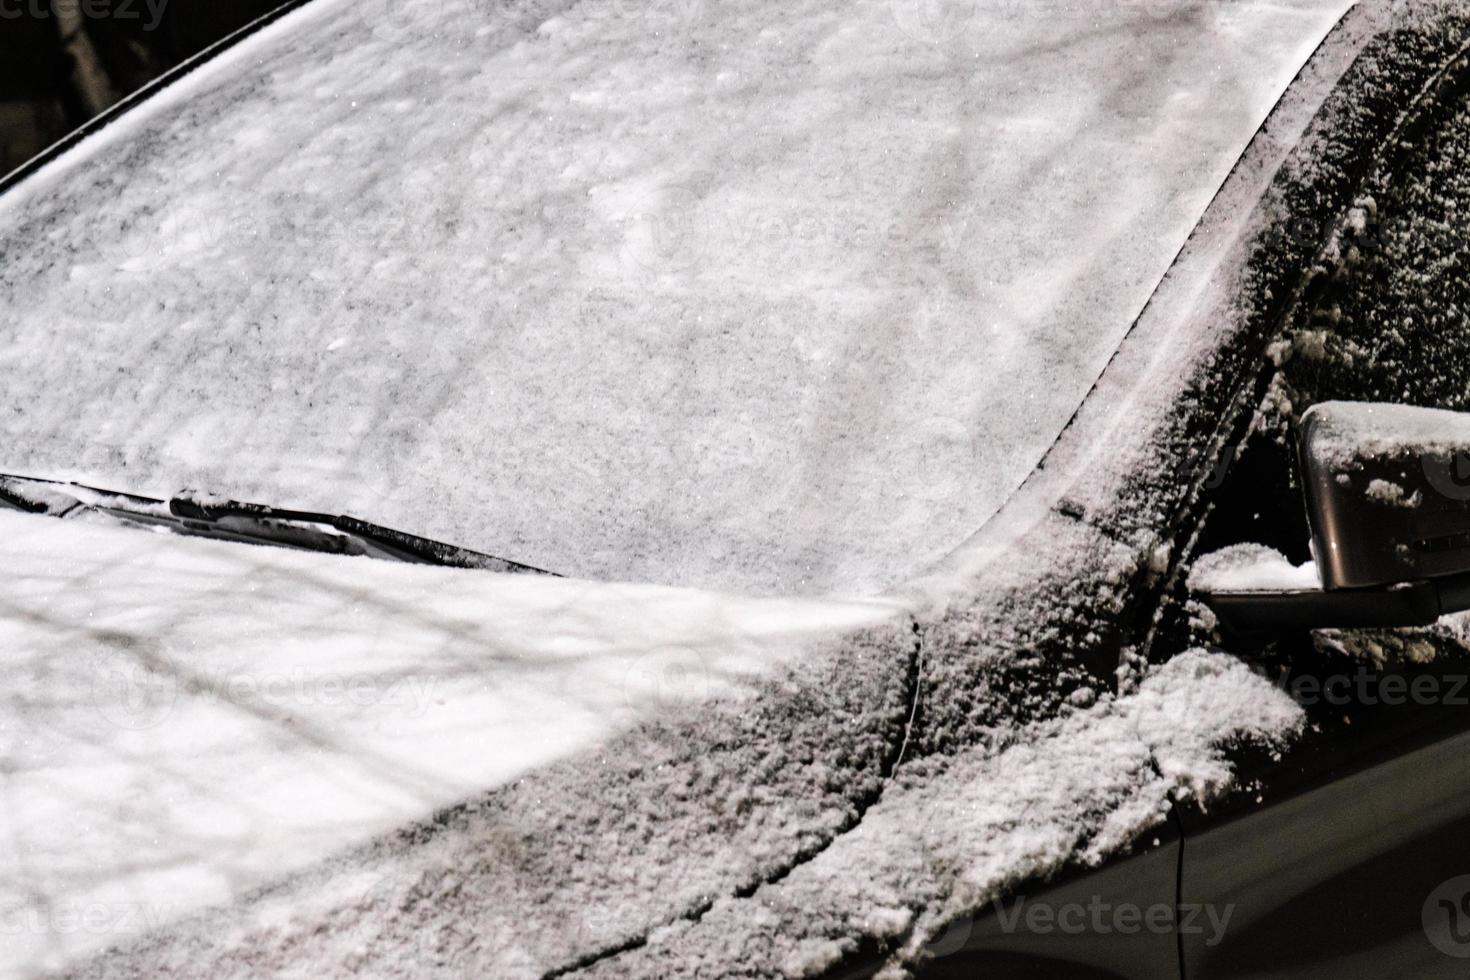 bilvindrutan täckt med ett tjockt lager av snö efter storm utanför foto